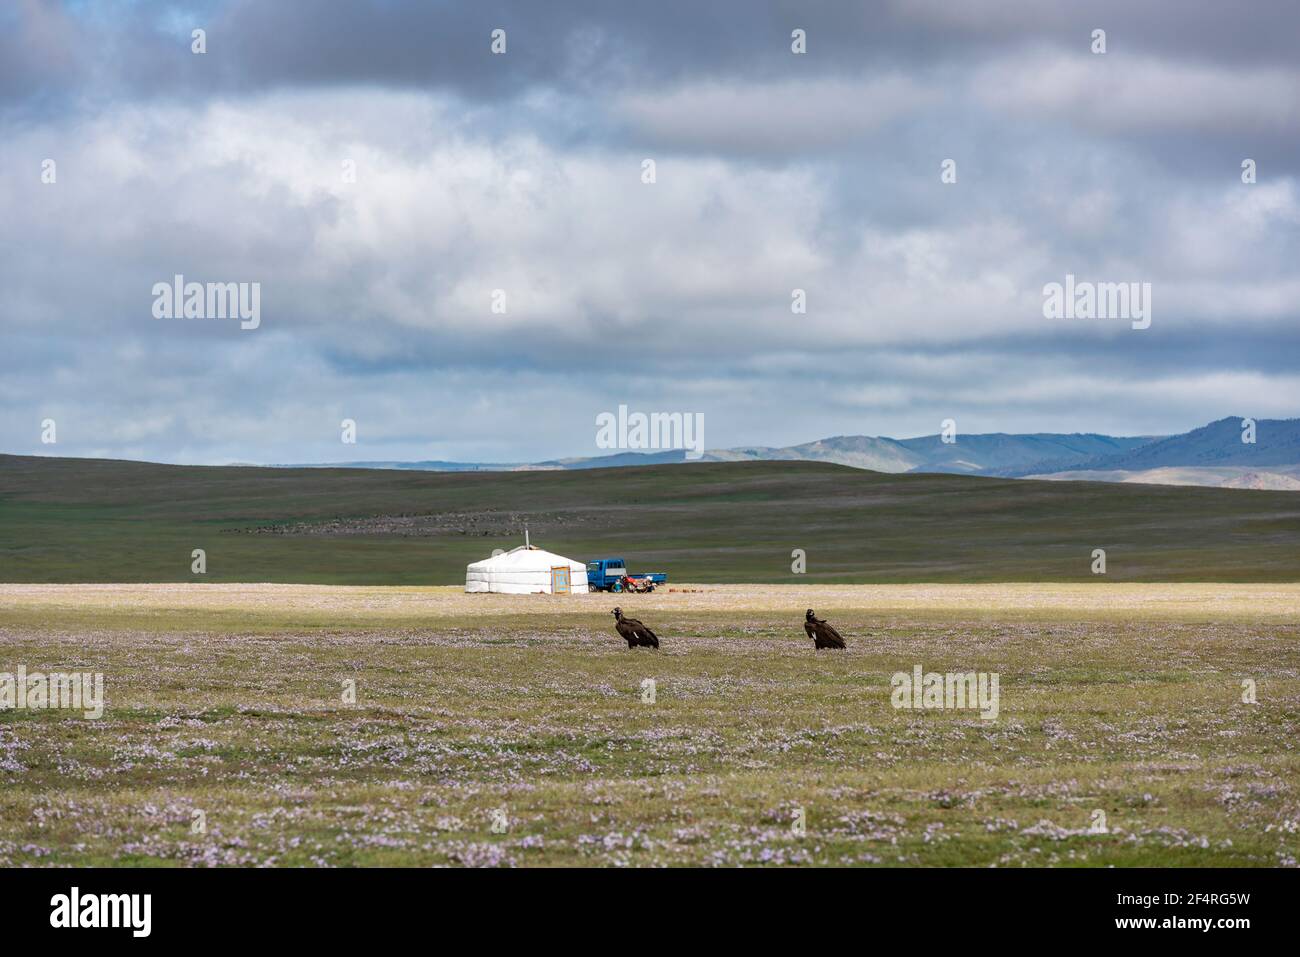 Tsetserleg, Mongoliam - 11 agosto 2019: Yurt mongolo nella steppa con nuvole scure e cielo e due avvoltoi in primo piano sull'erba. Foto Stock